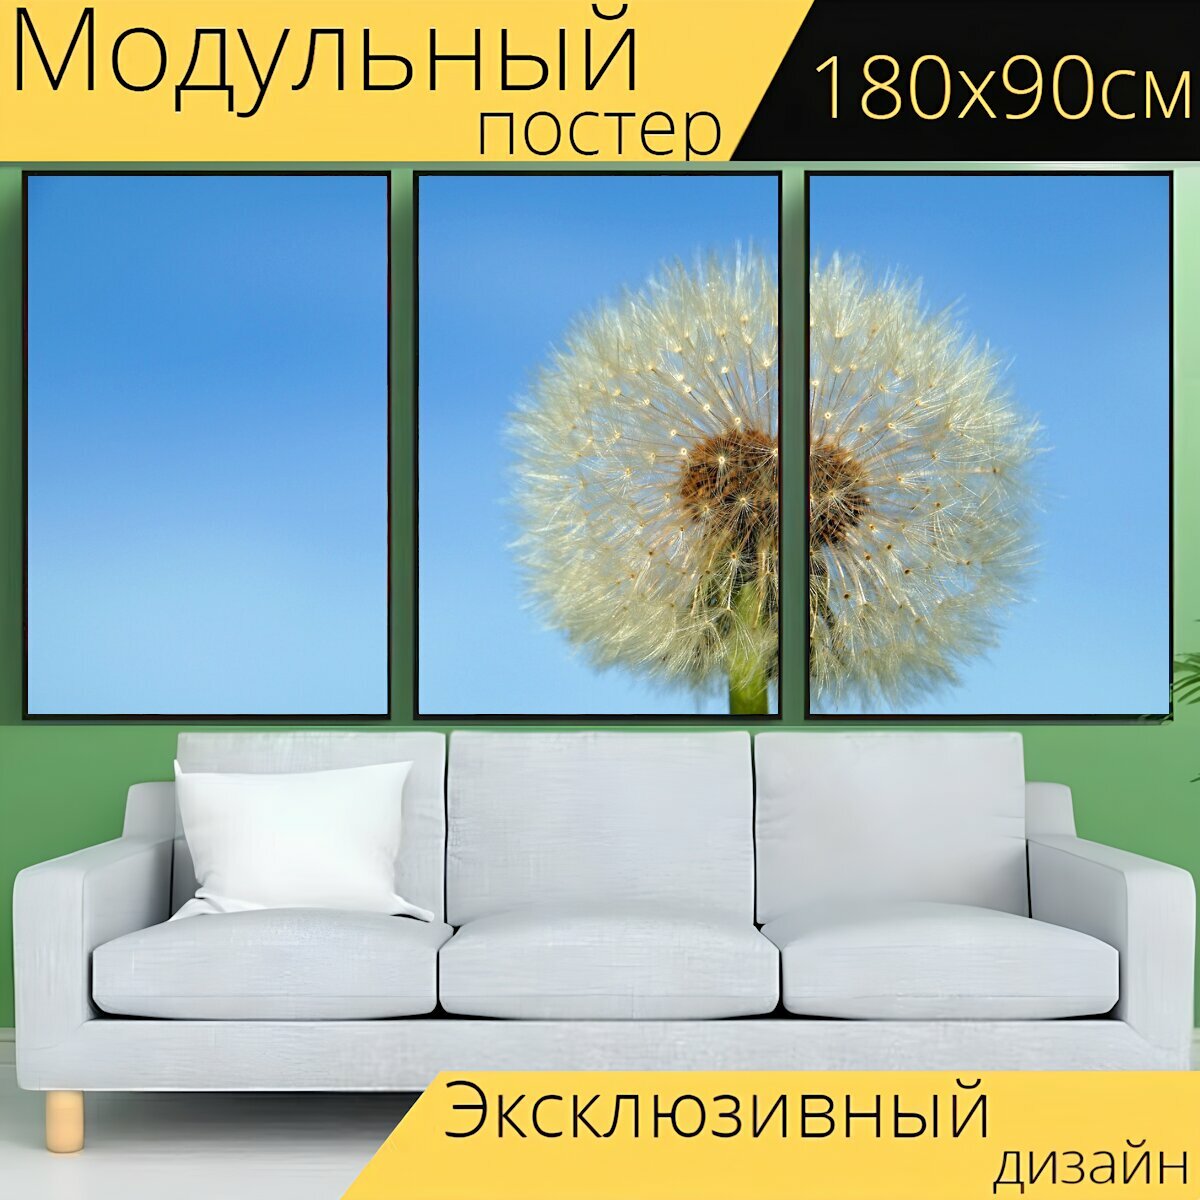 Модульный постер "Одуванчик, одуванчик цветок, природа" 180 x 90 см. для интерьера